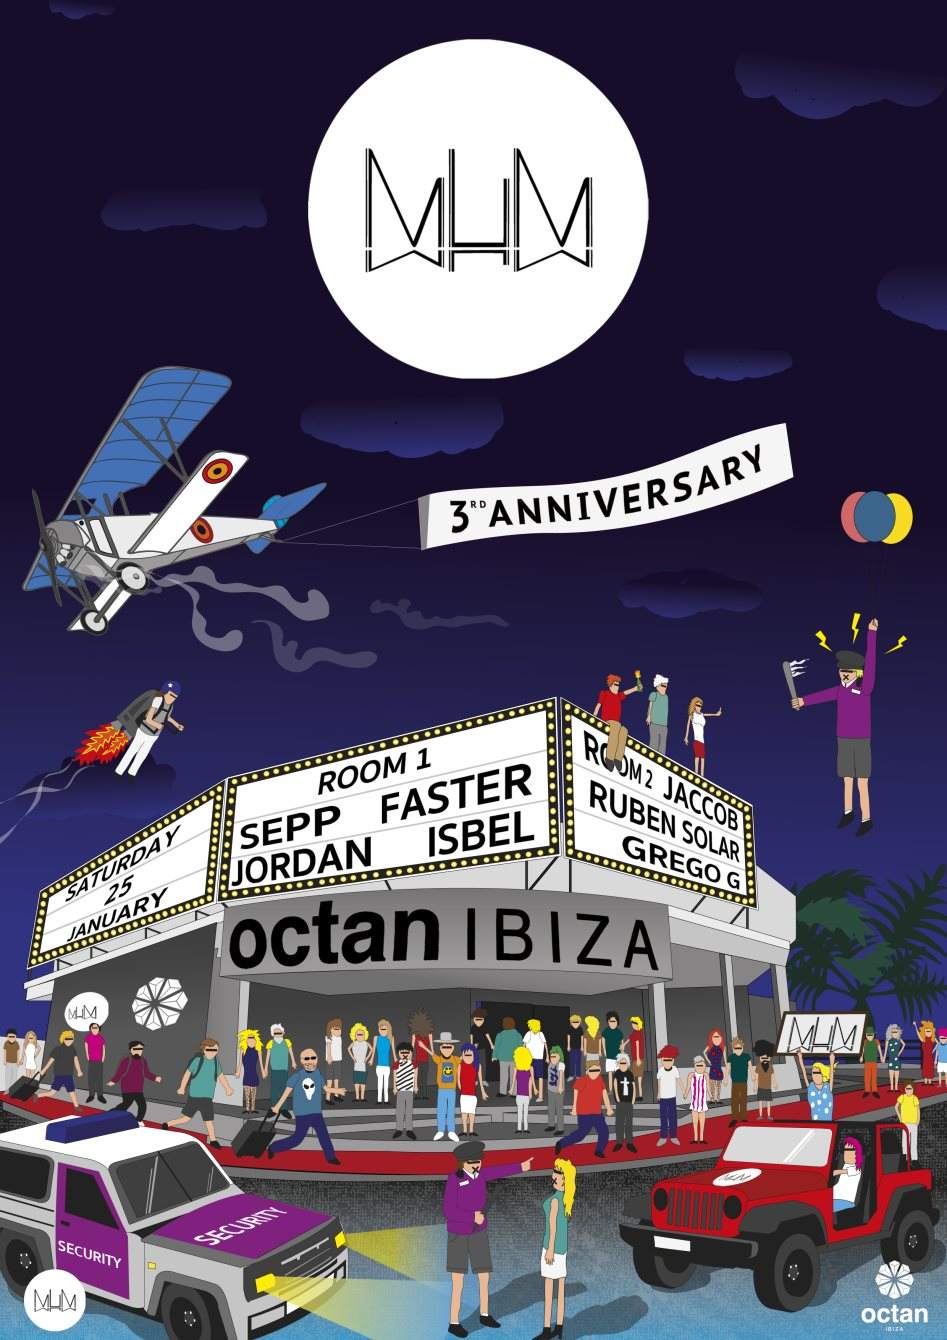 MuM 3* Anniversary - フライヤー表